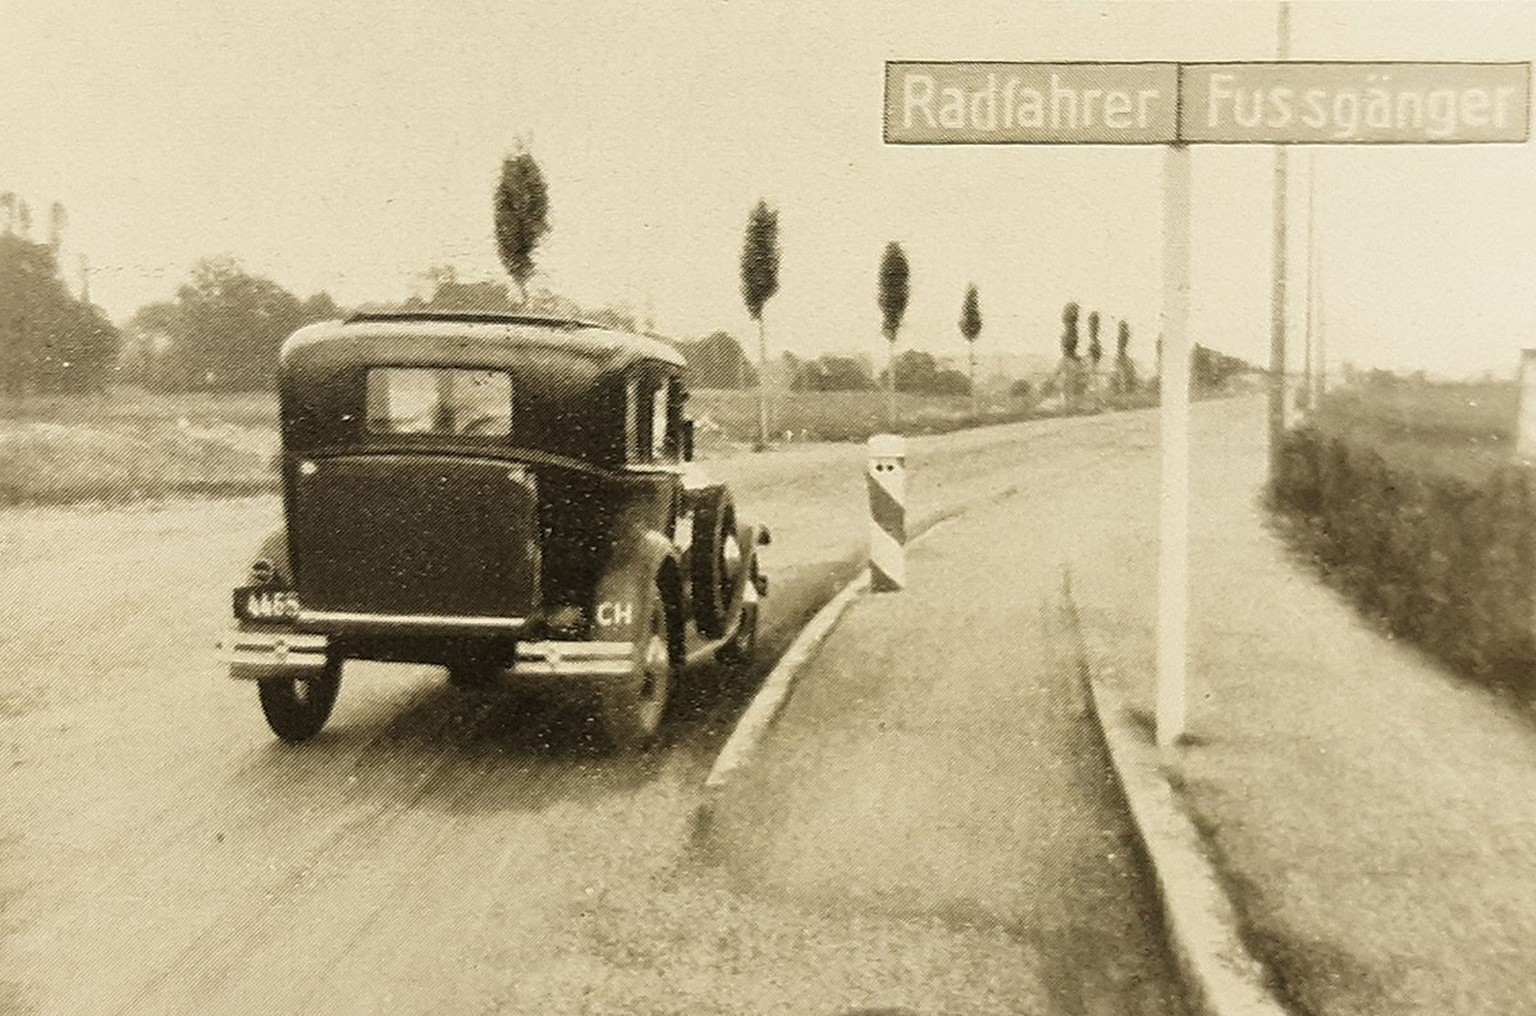 Durchgangsstrasse Zürich-Winterthur mit Radfahrweg und Fussgängerstreifen, um 1935.
https://www.query.sta.be.ch/detail.aspx?ID=161232